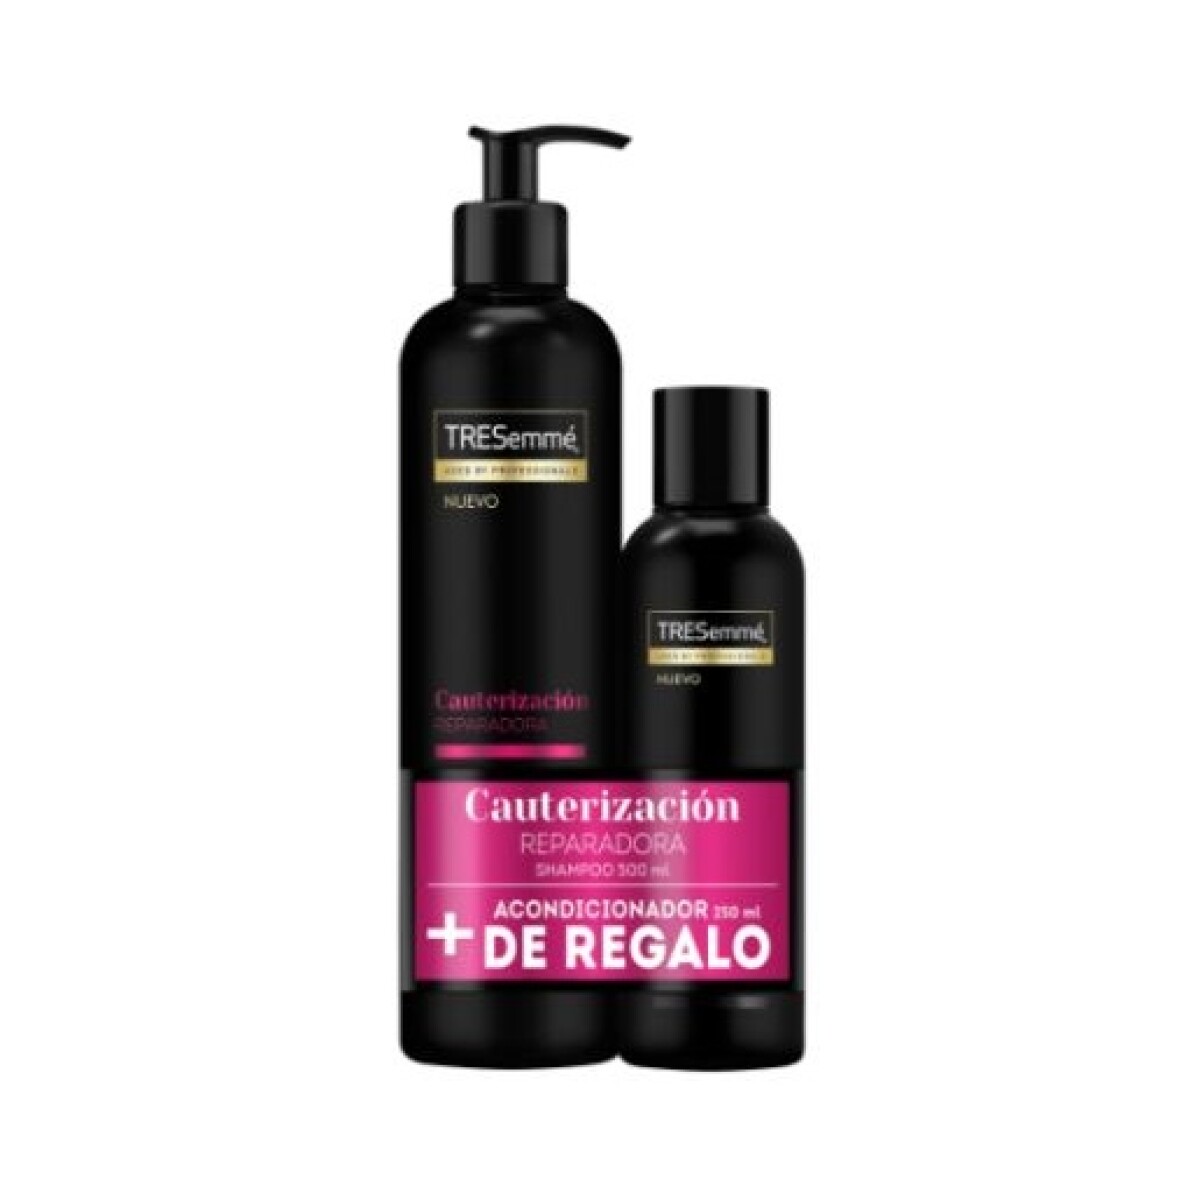 Shampoo Tresemme Cauterización Reparadora 500ml + Aco. 250ml 